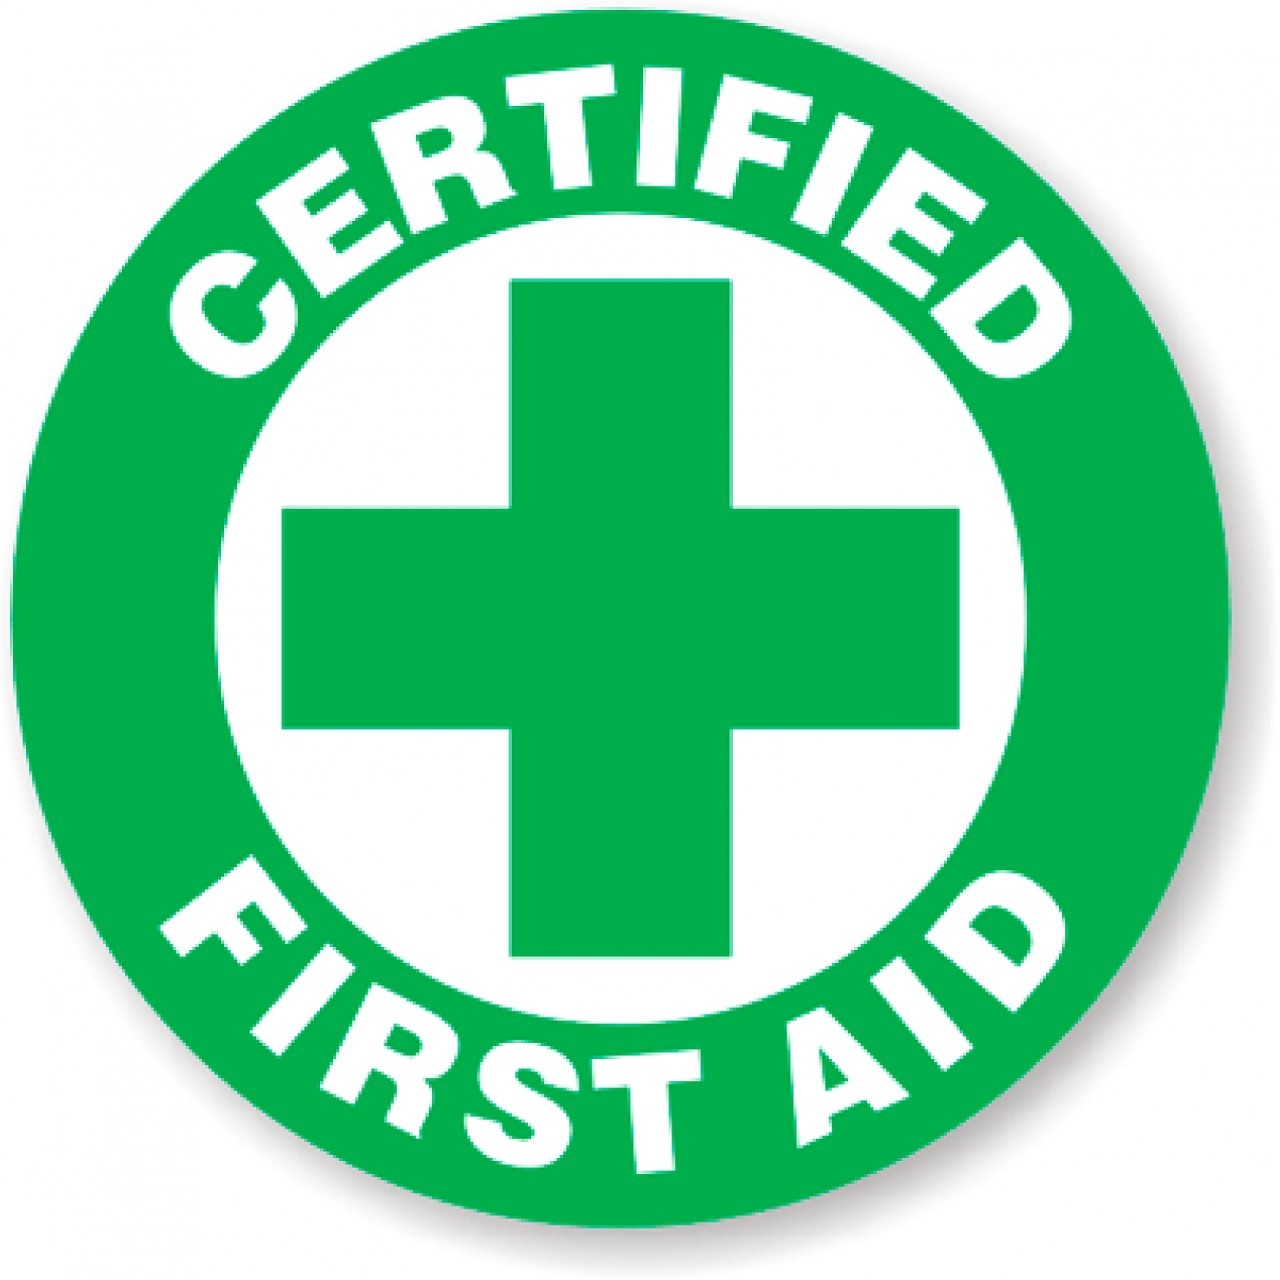 Certified First Aid Sticker - SafetyKore.